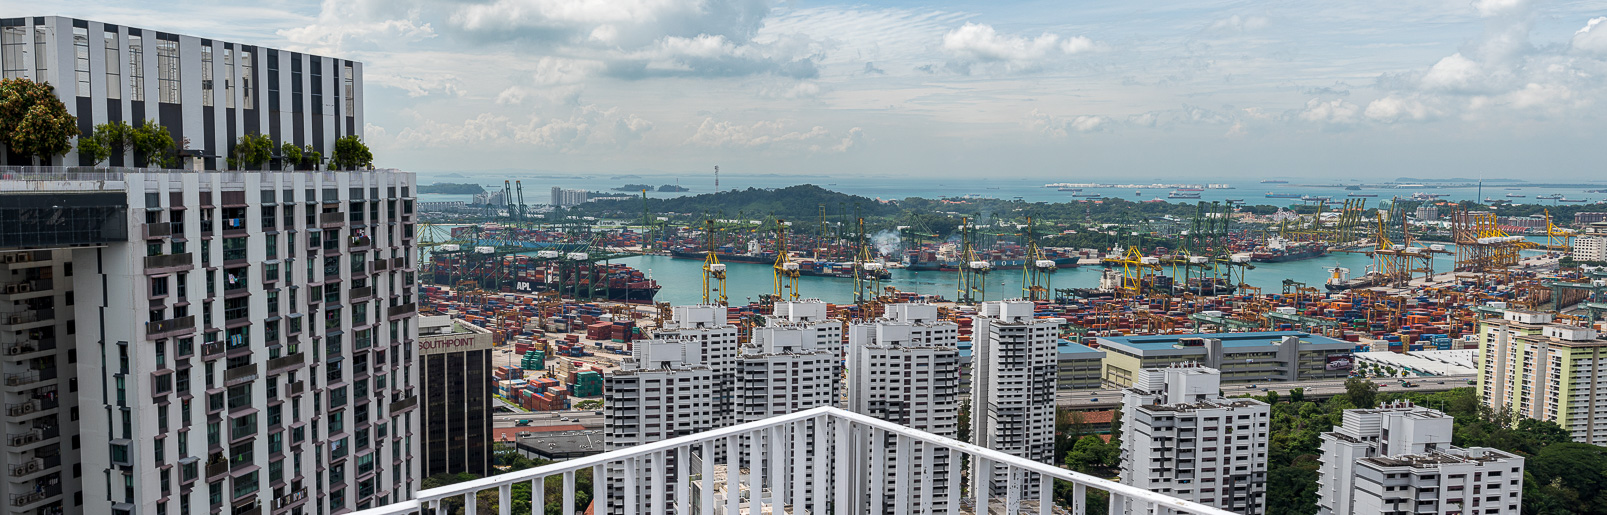 Vues depuis le sommet du Pinacle@Duxton sur le port de Singapour.